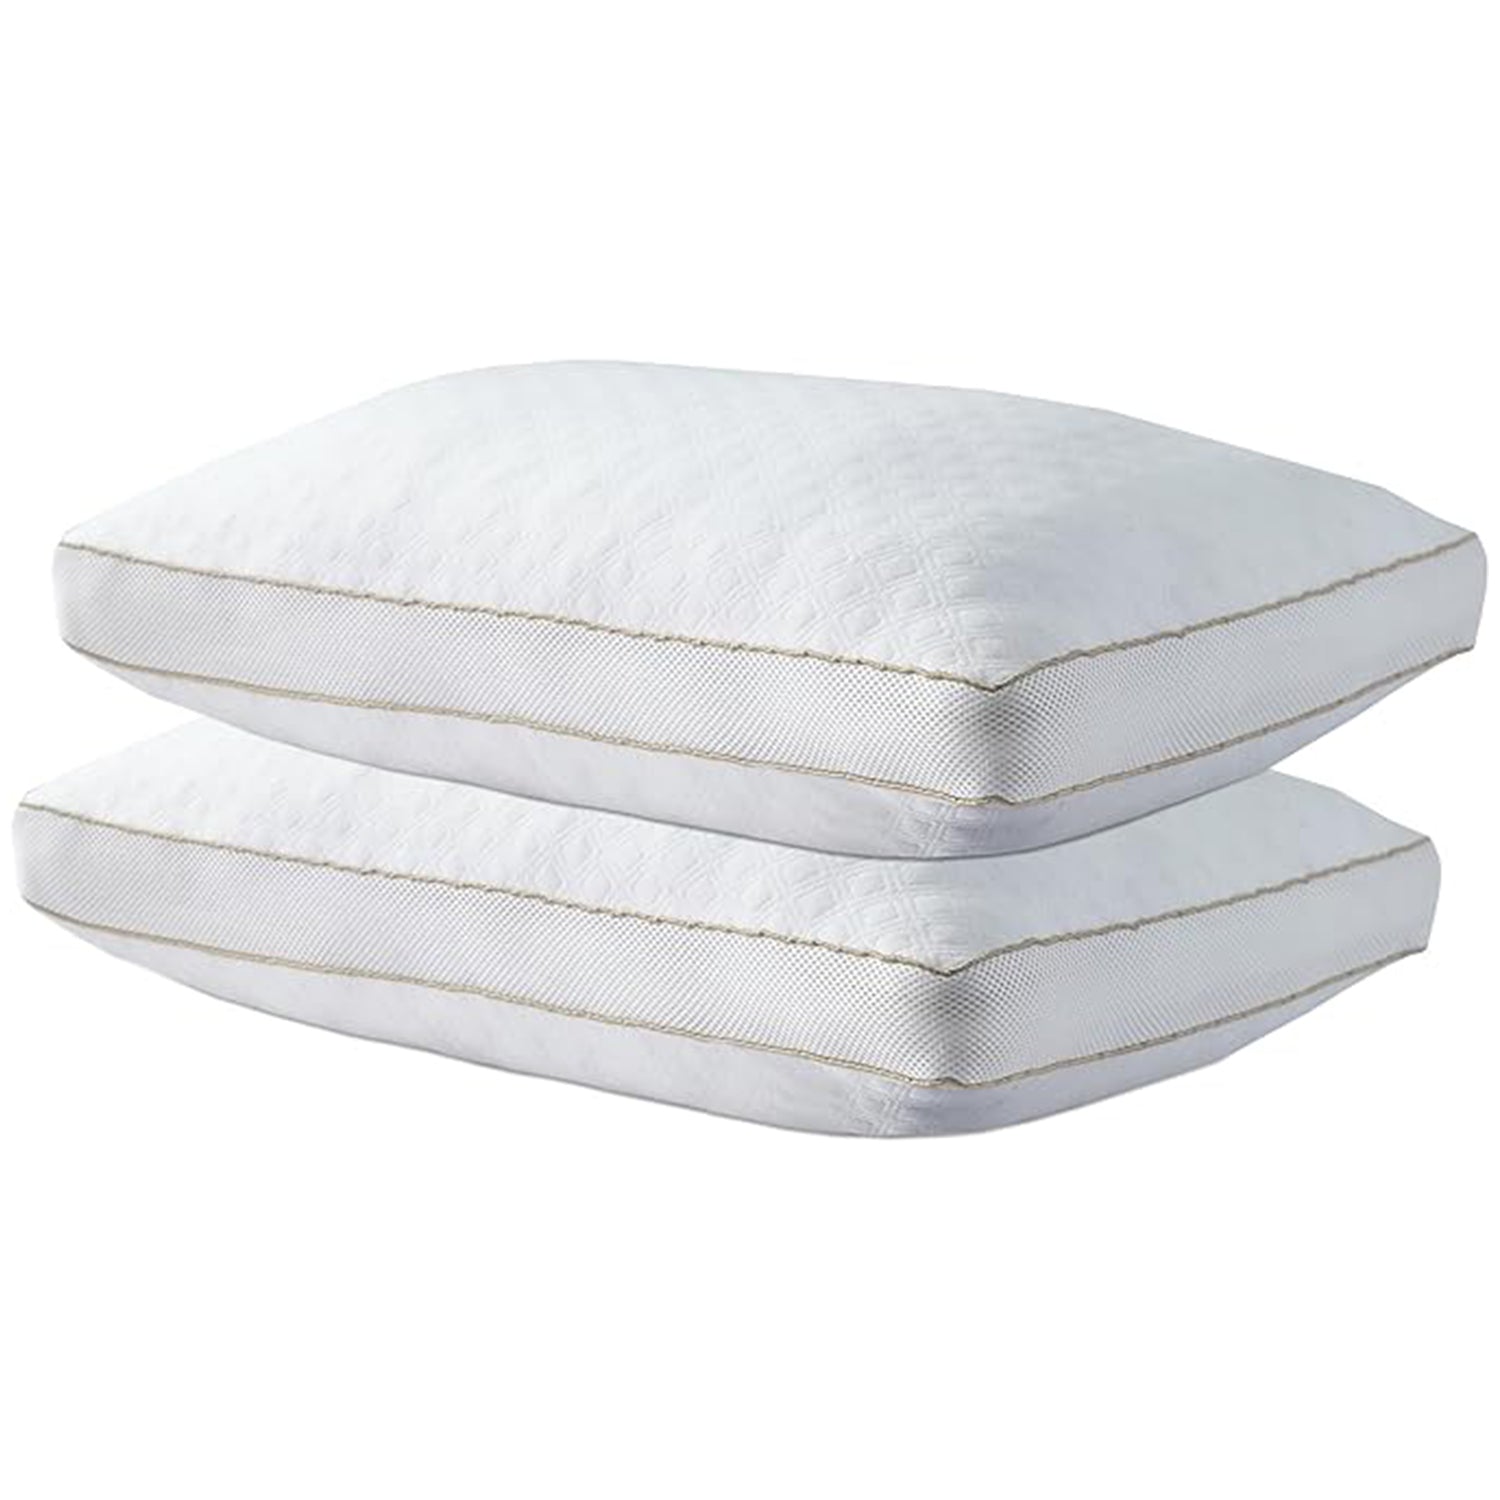 Airmax Pillows - Air Mesh Sides for a Cool Night's Sleep